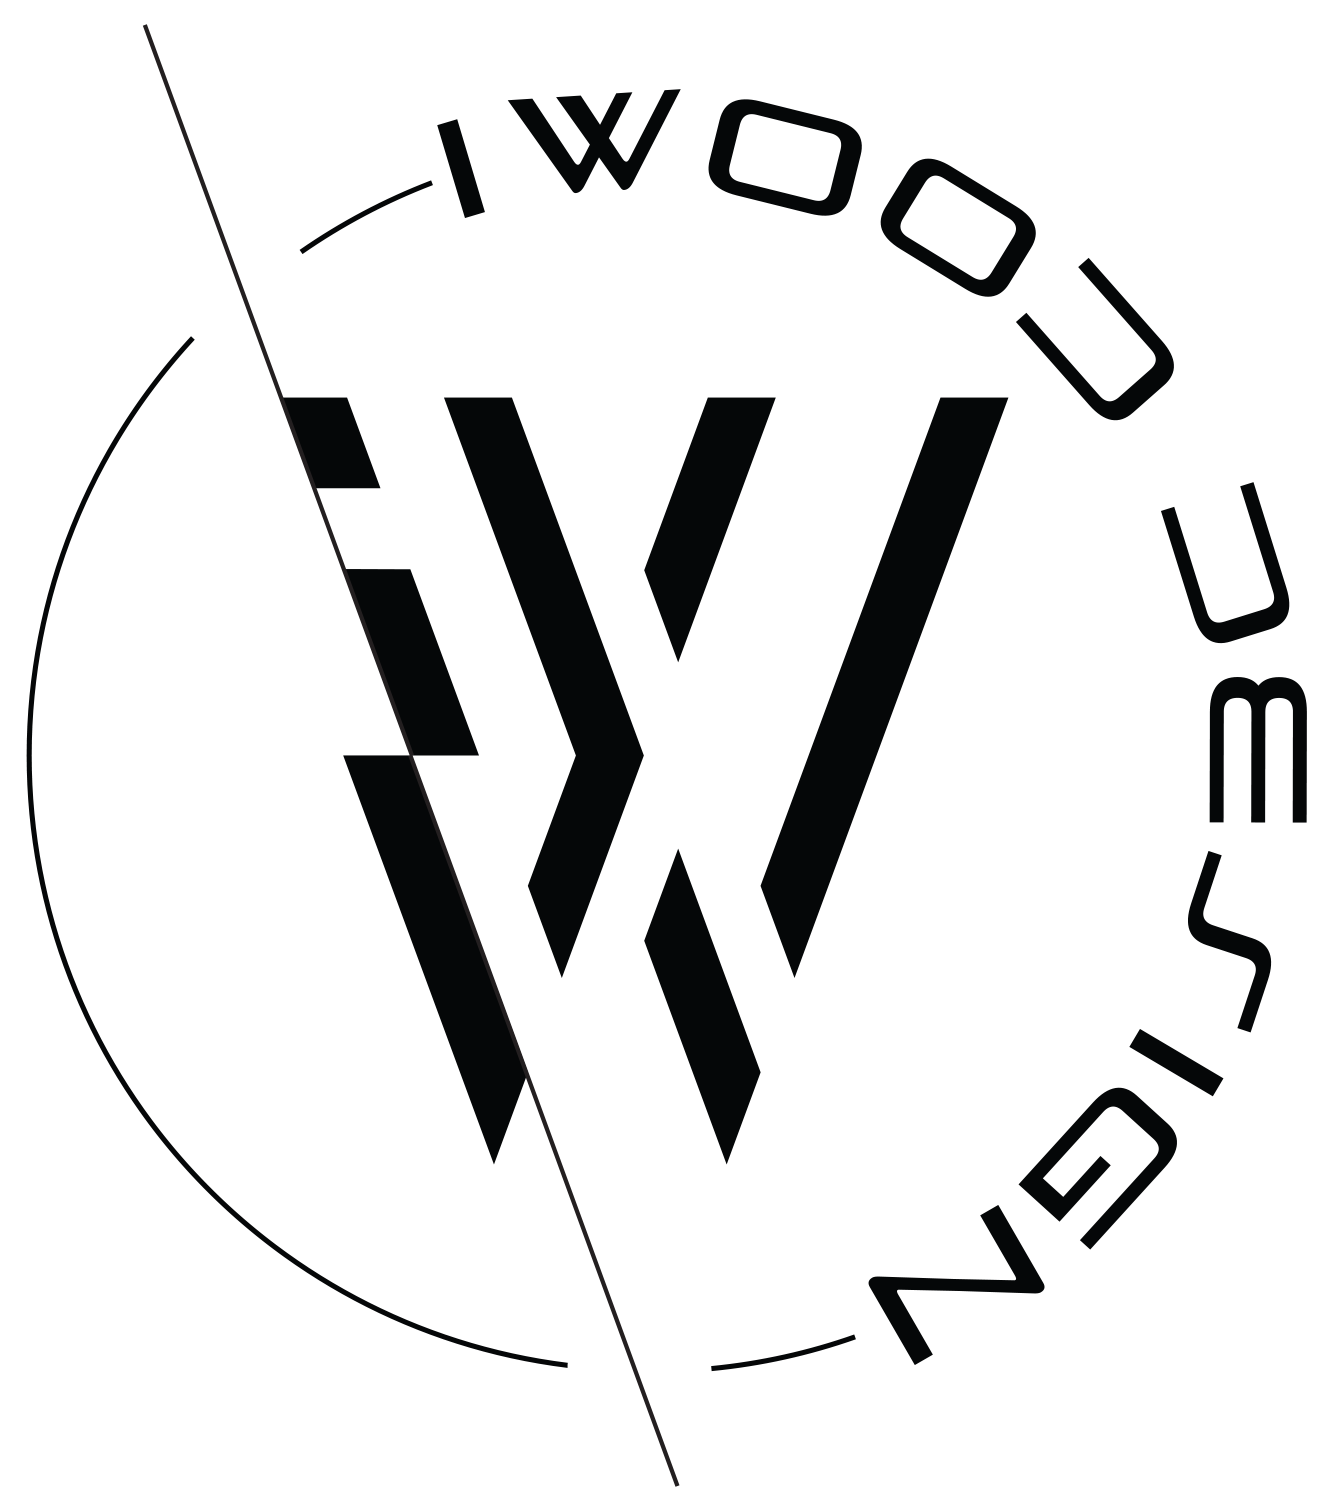 Custom Wood Gifts - IWood Design